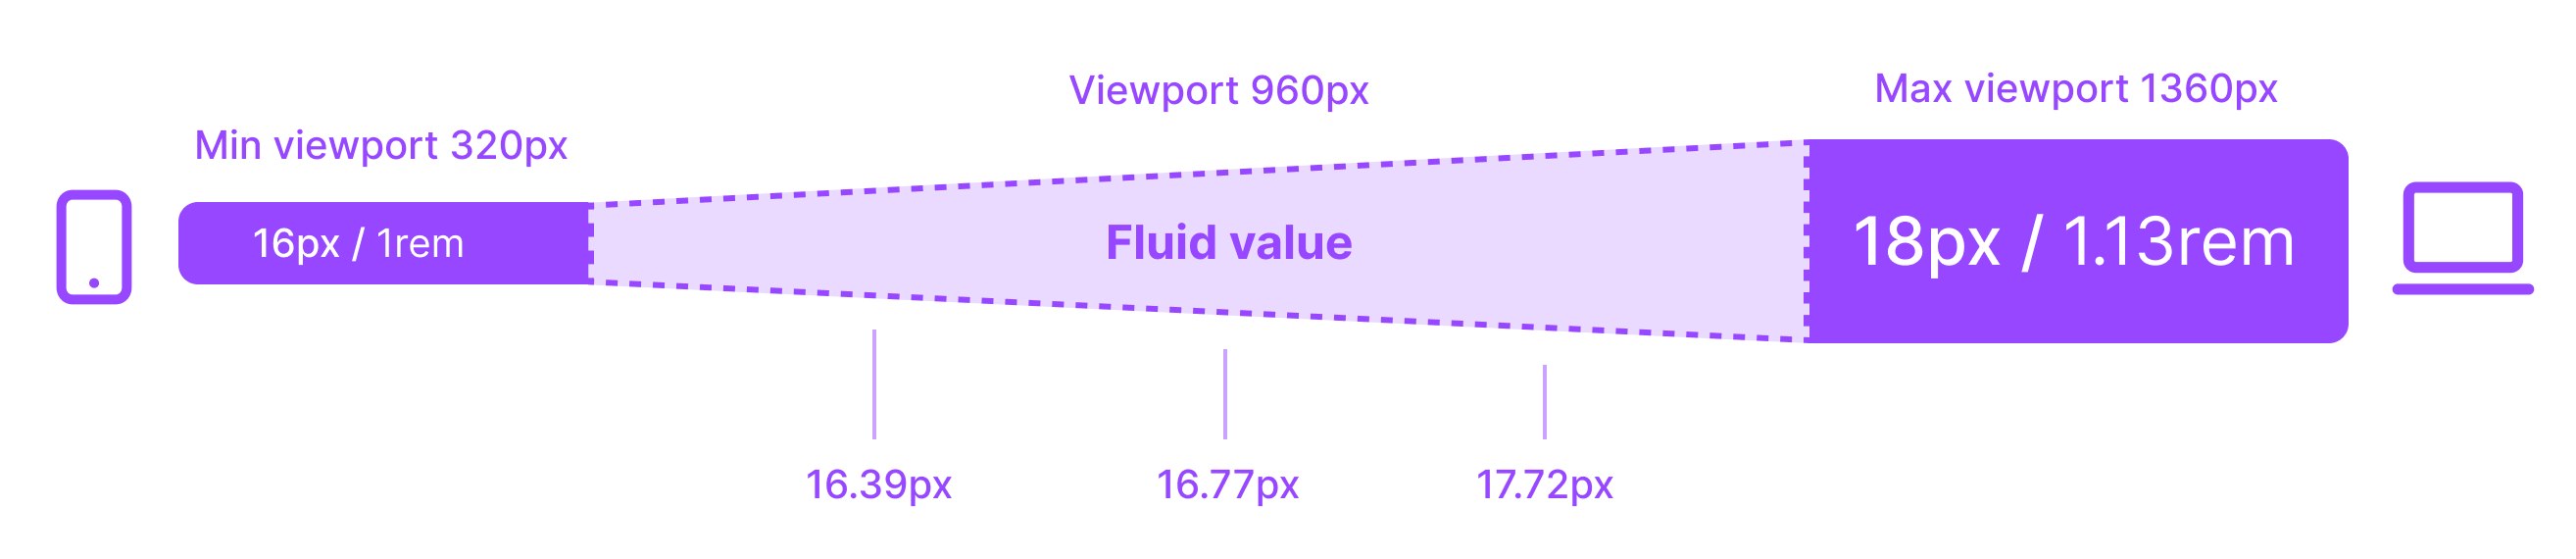 Illustrasjonen viser at en 16px tekststørrelser på små skjermer øker gradvis opp til 18px på store skjermer.